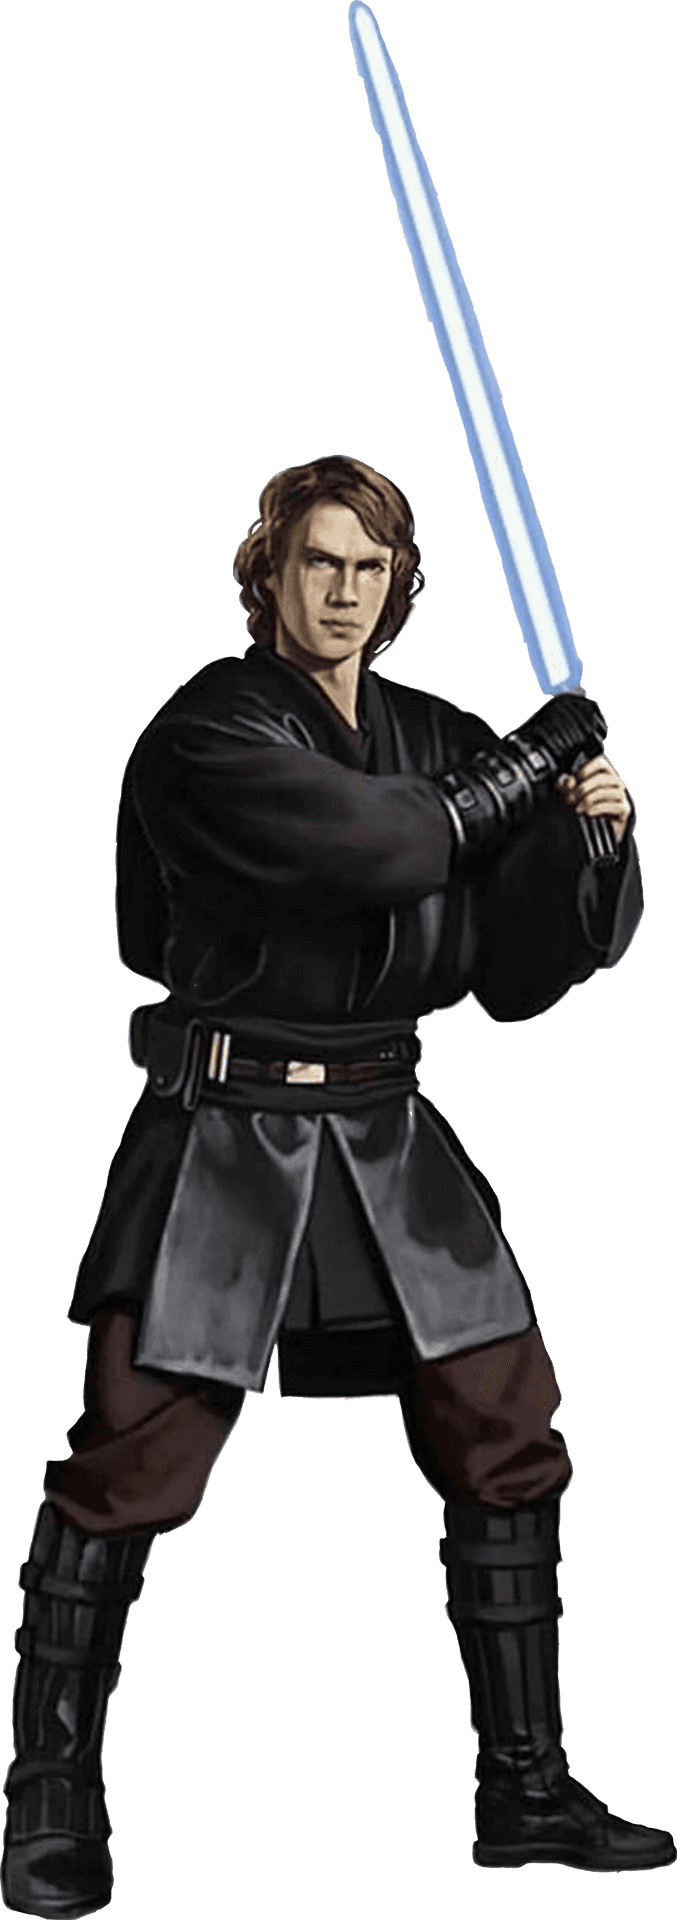 Anakin Skywalker With Lightsaber Star Wars PNG image